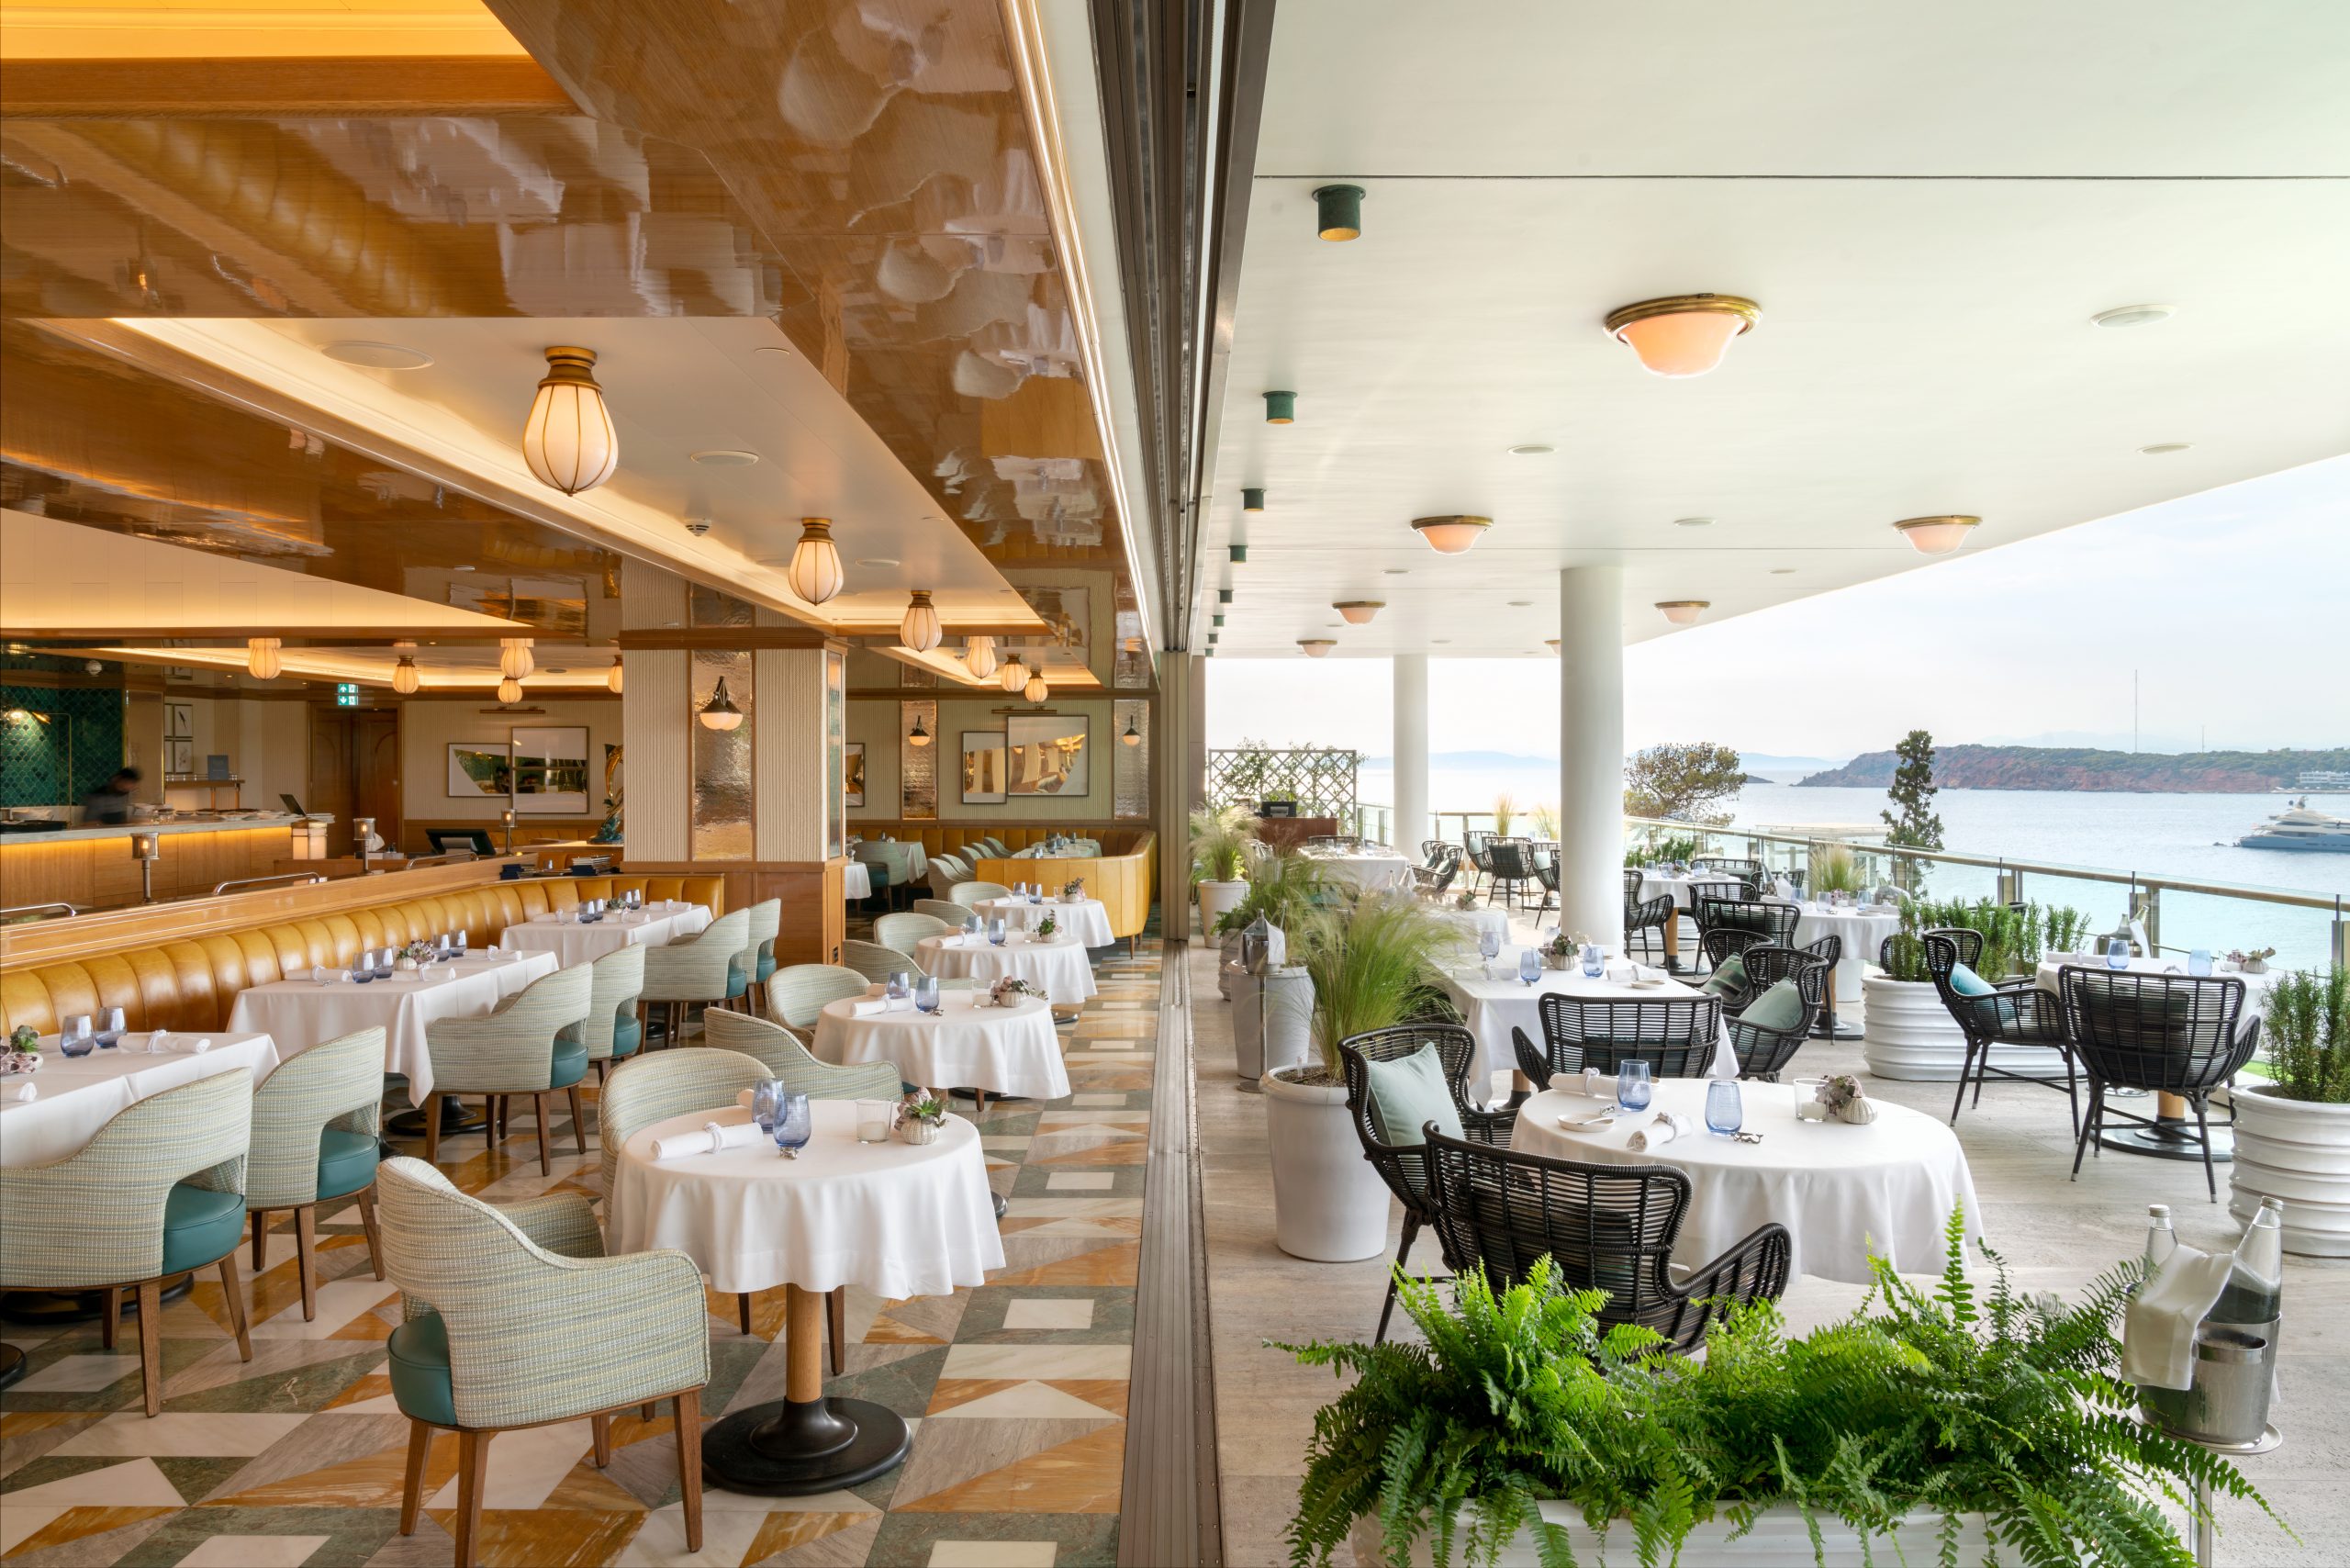 Ξεκινώντας από τον πιο ερωτικό μήνα του χρόνου, γιορτάστε κάθε μήνα τη δύναμη της αγάπης στο Four Seasons Astir Palace Hotel Athens.